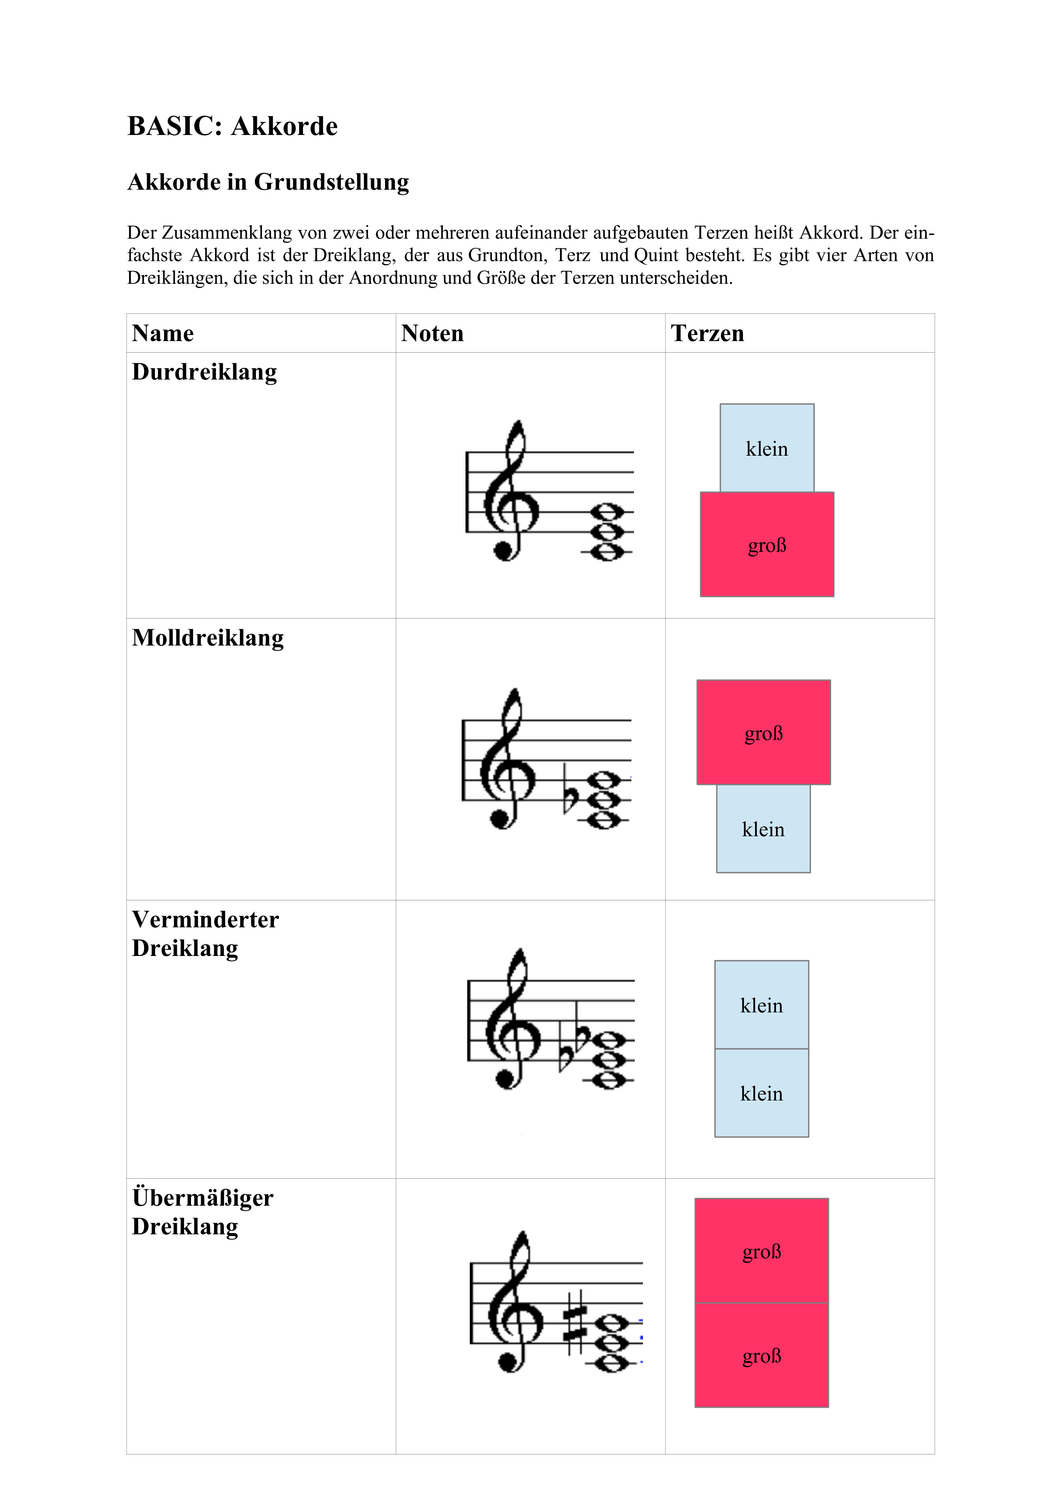 Basic Und Aufbau Akkorde In Grundstellung Und Umkehrung Unterrichtsmaterial Im Fach Musik Musikunterricht Unterrichtsmaterial Aufbau